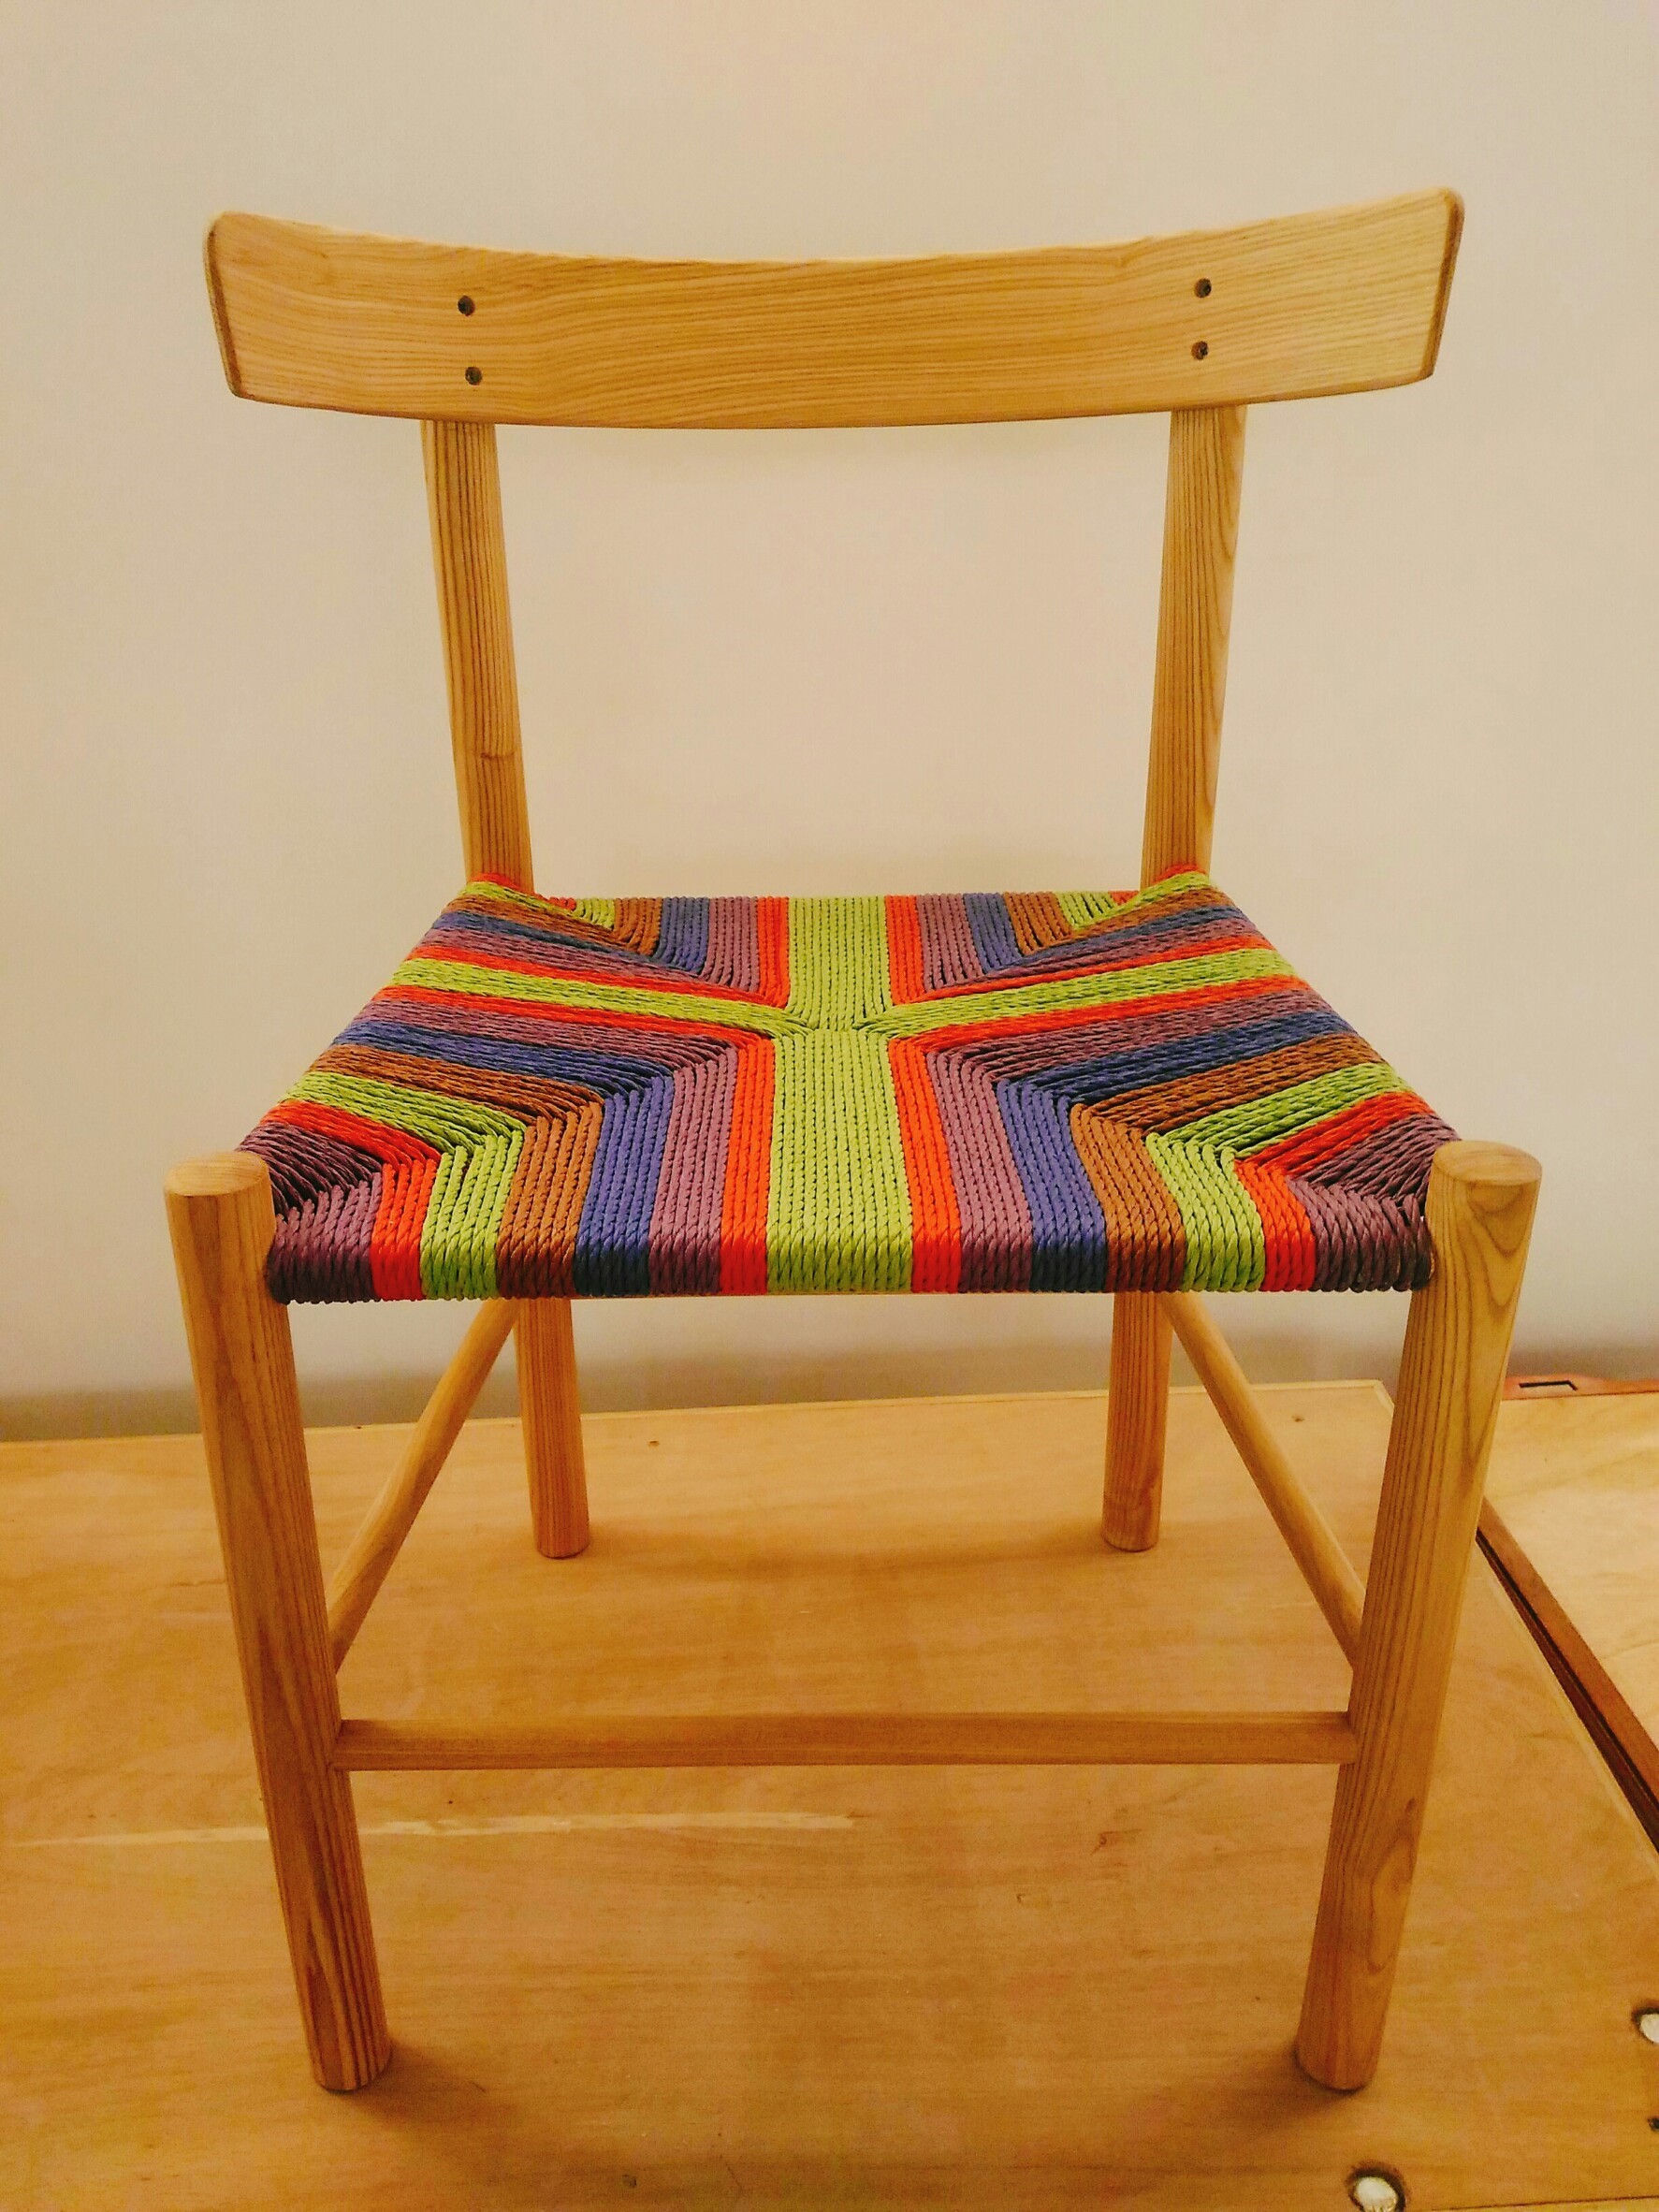 独力完成有趣又具个人风格的编织藤椅,呈现不同於一般椅子的全新体验!